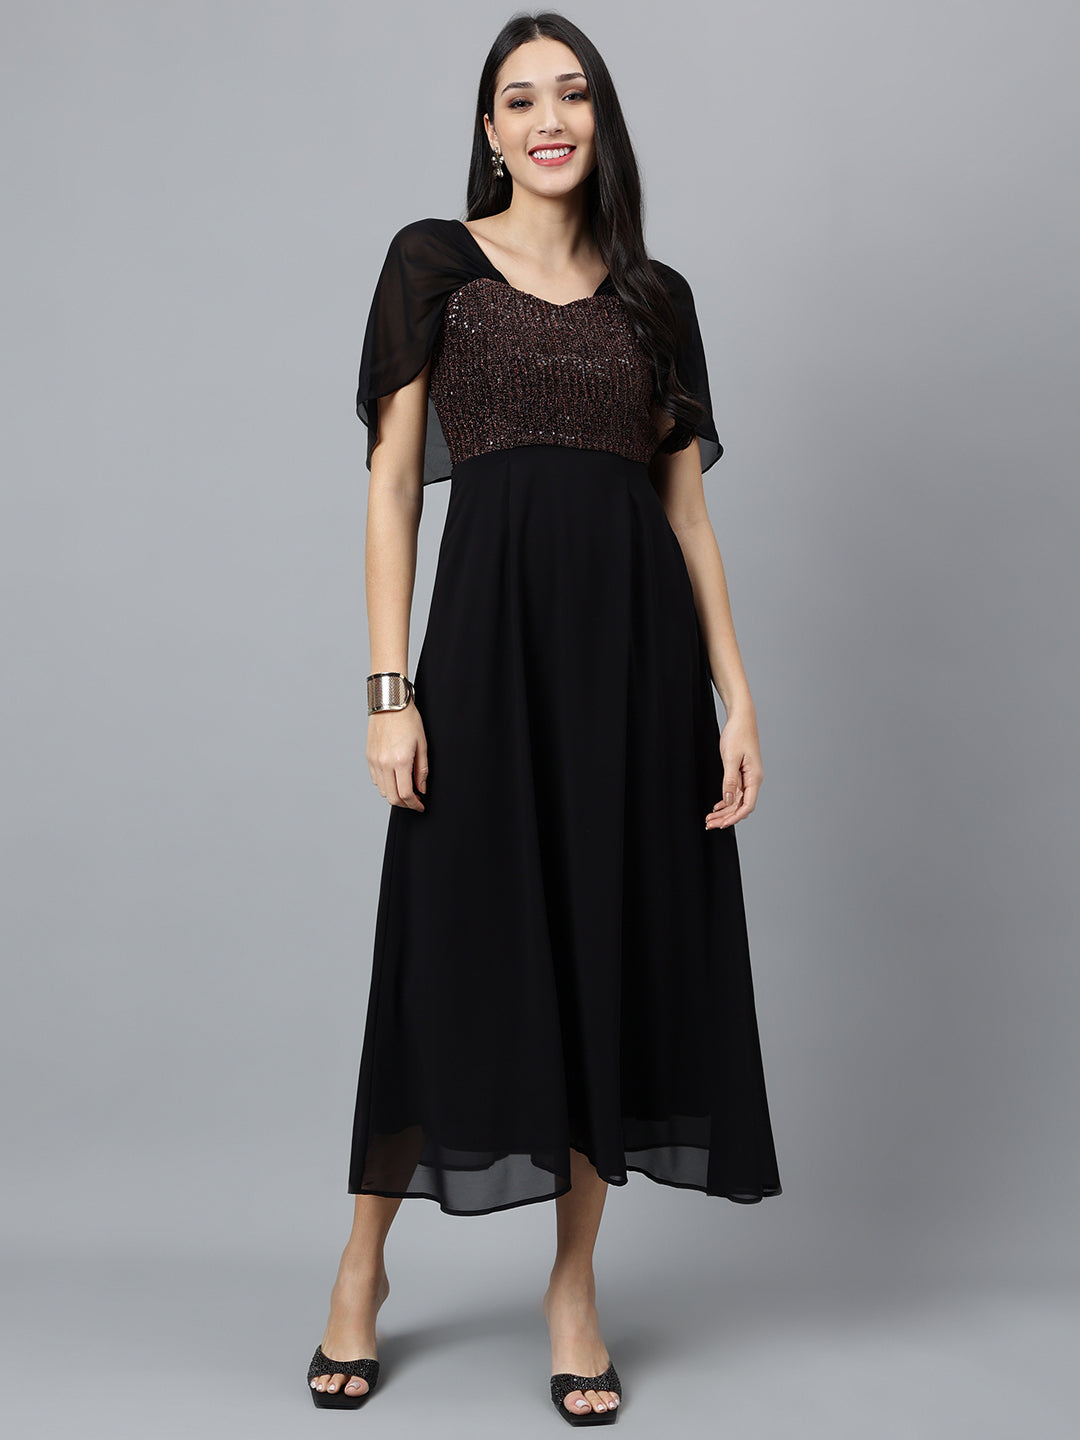 Unique Vintage Plus Size Black Delores Swing Dress with Sleeves | Swing  dress with sleeves, Swing dress, Unique dresses